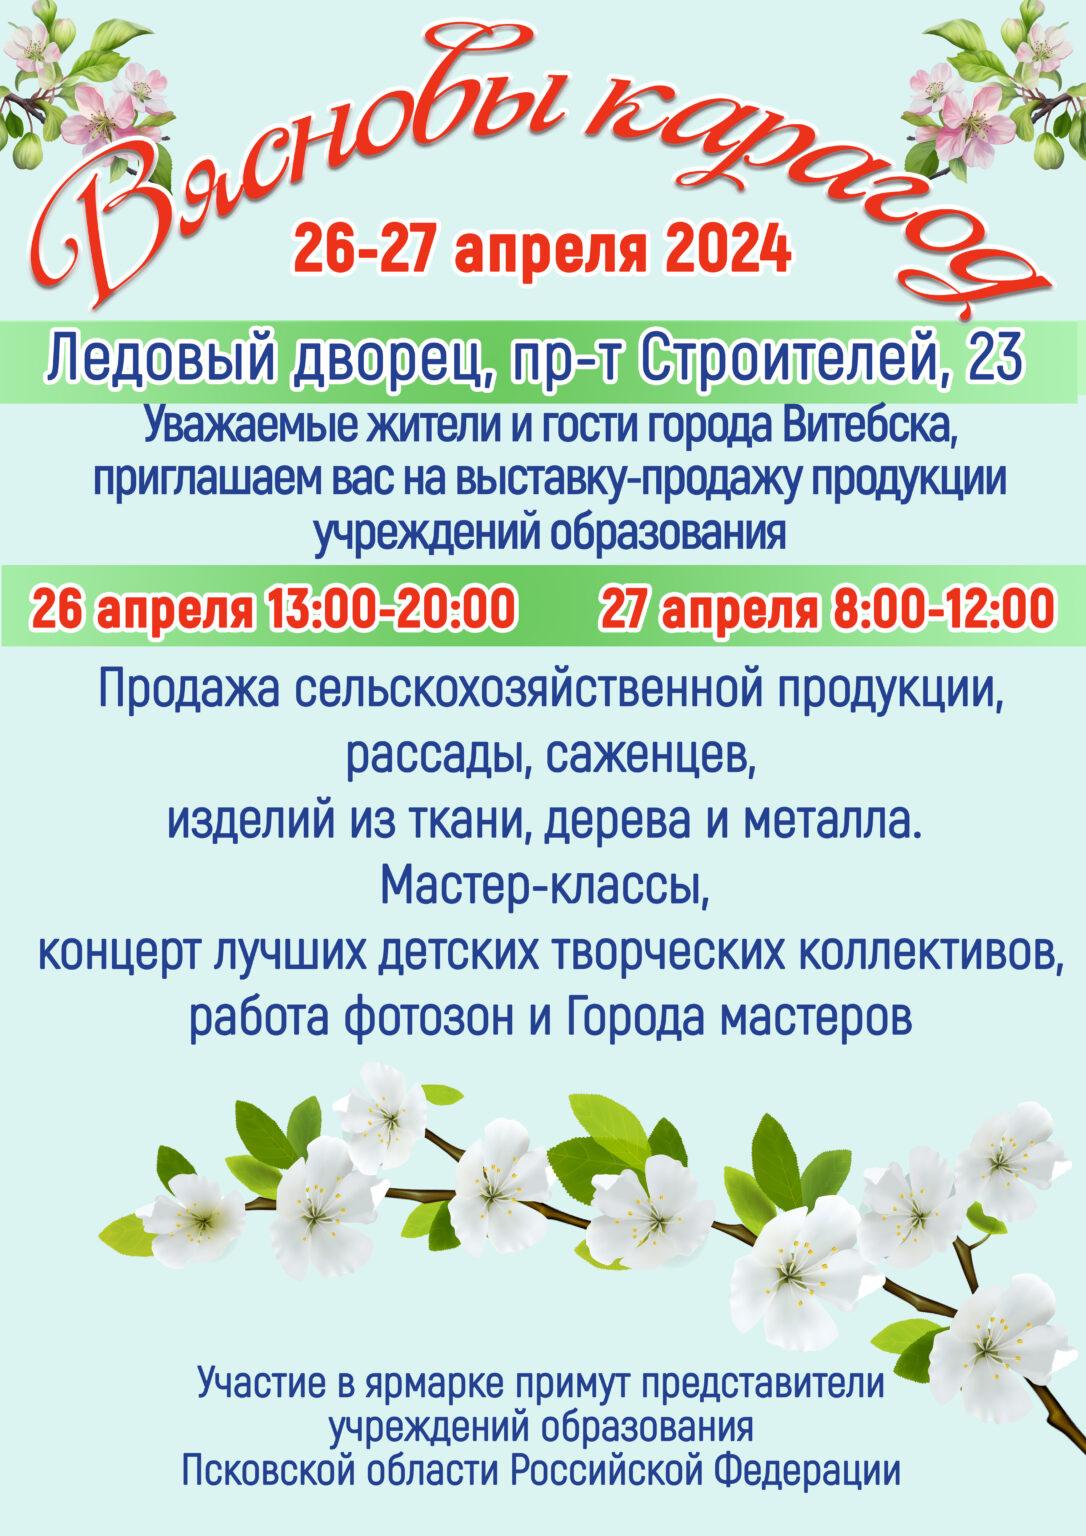 26-27 апреля "Вясновы карагод"